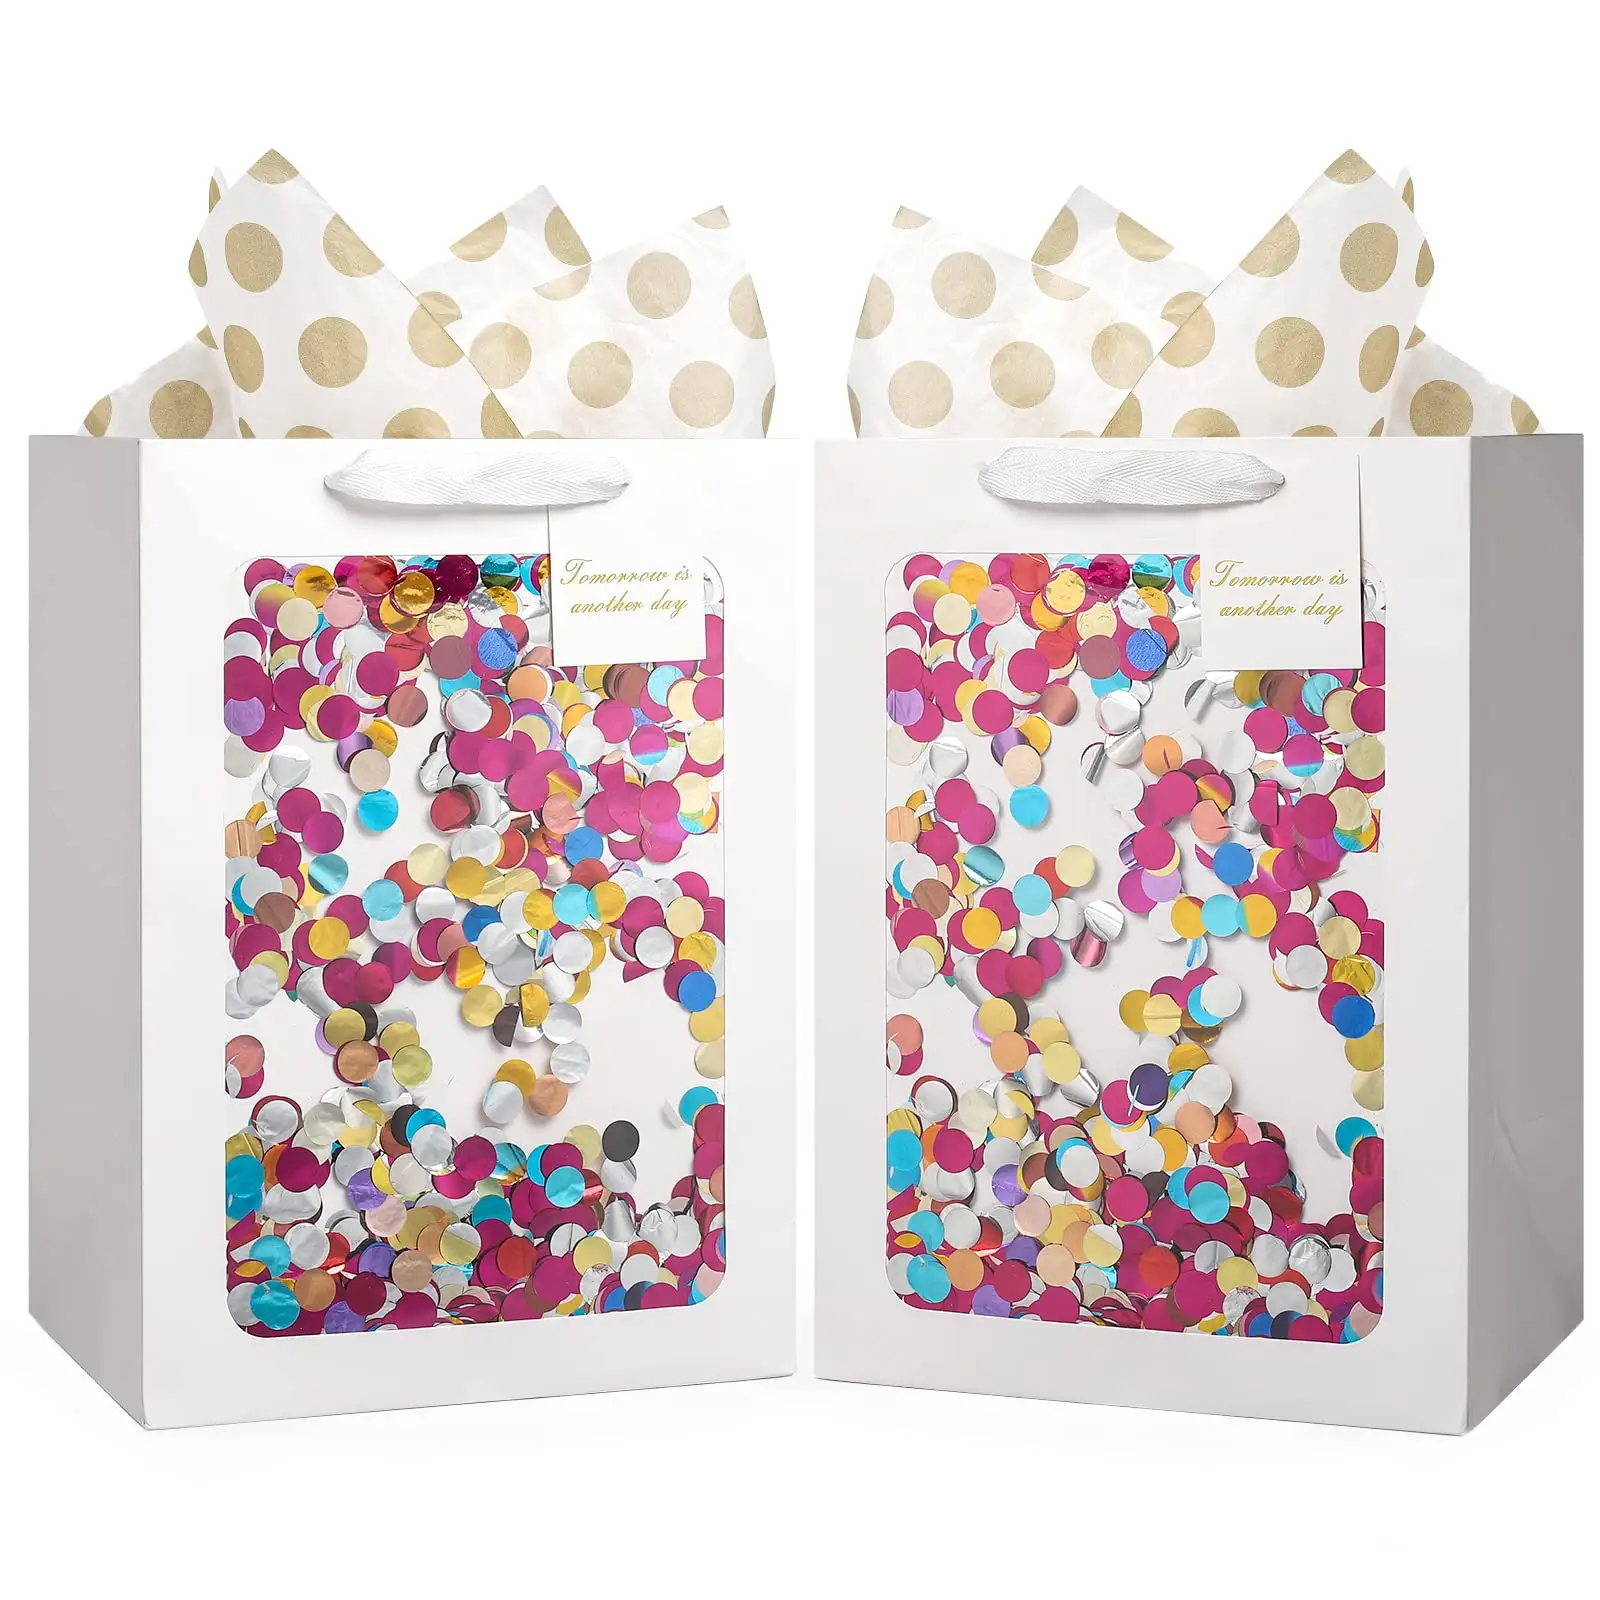 Cute Smooth Surface Golden Dot Tissue grandi borse bianche damigelle d'onore personalizzate sacchetti regalo di ritorno di carta ecologici per regali